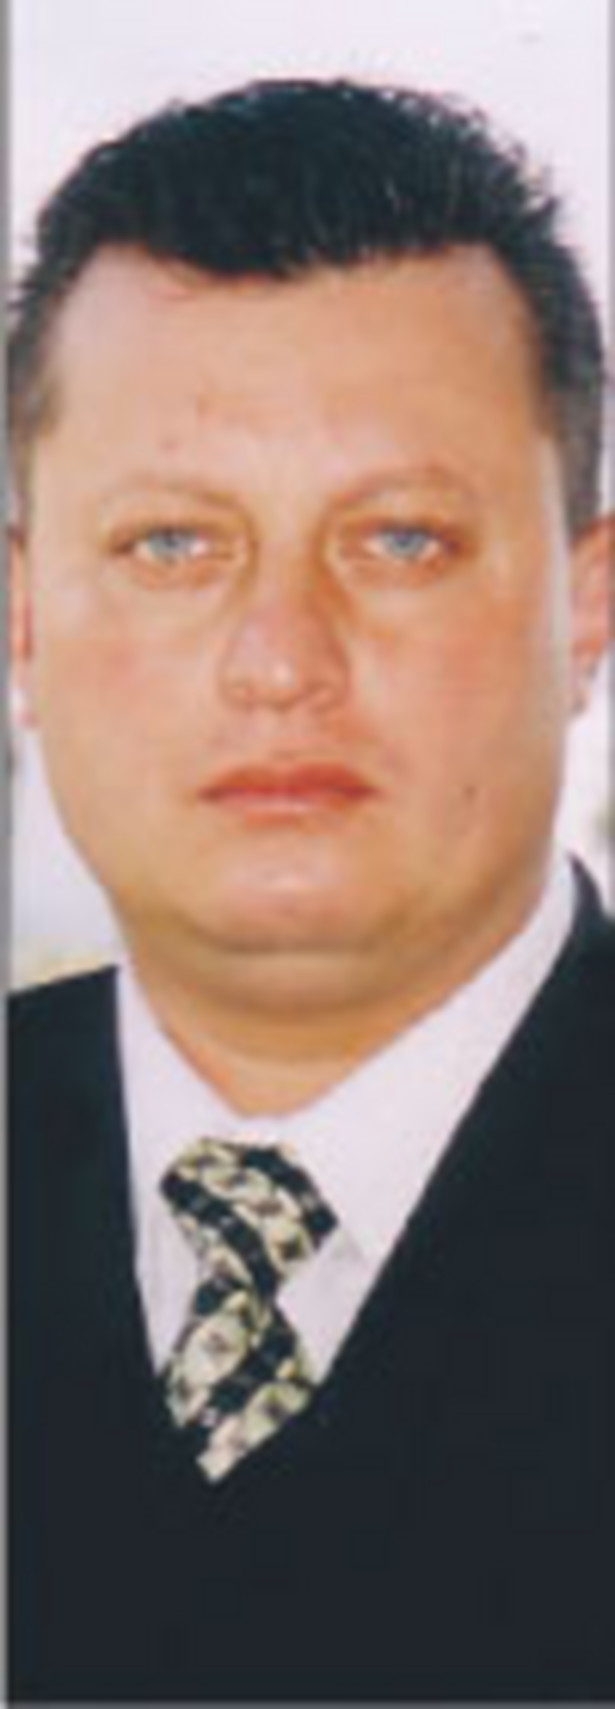 Artur Kamiński, właściciel firmy ArtexTransport